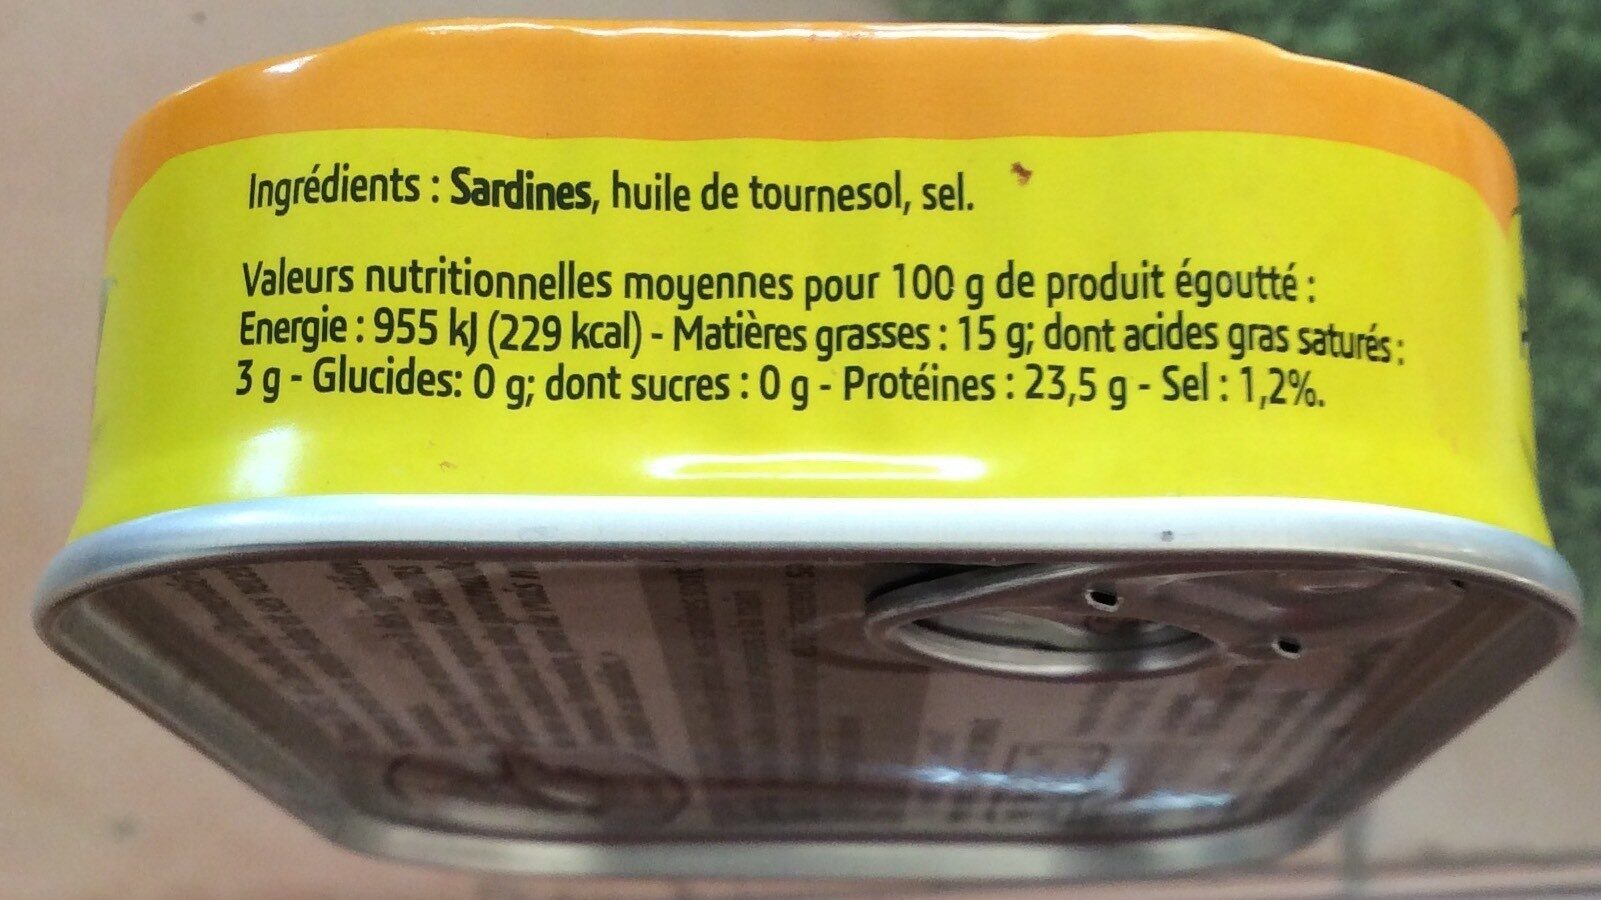 Sardines huile de tournesol - Nutrition facts - fr